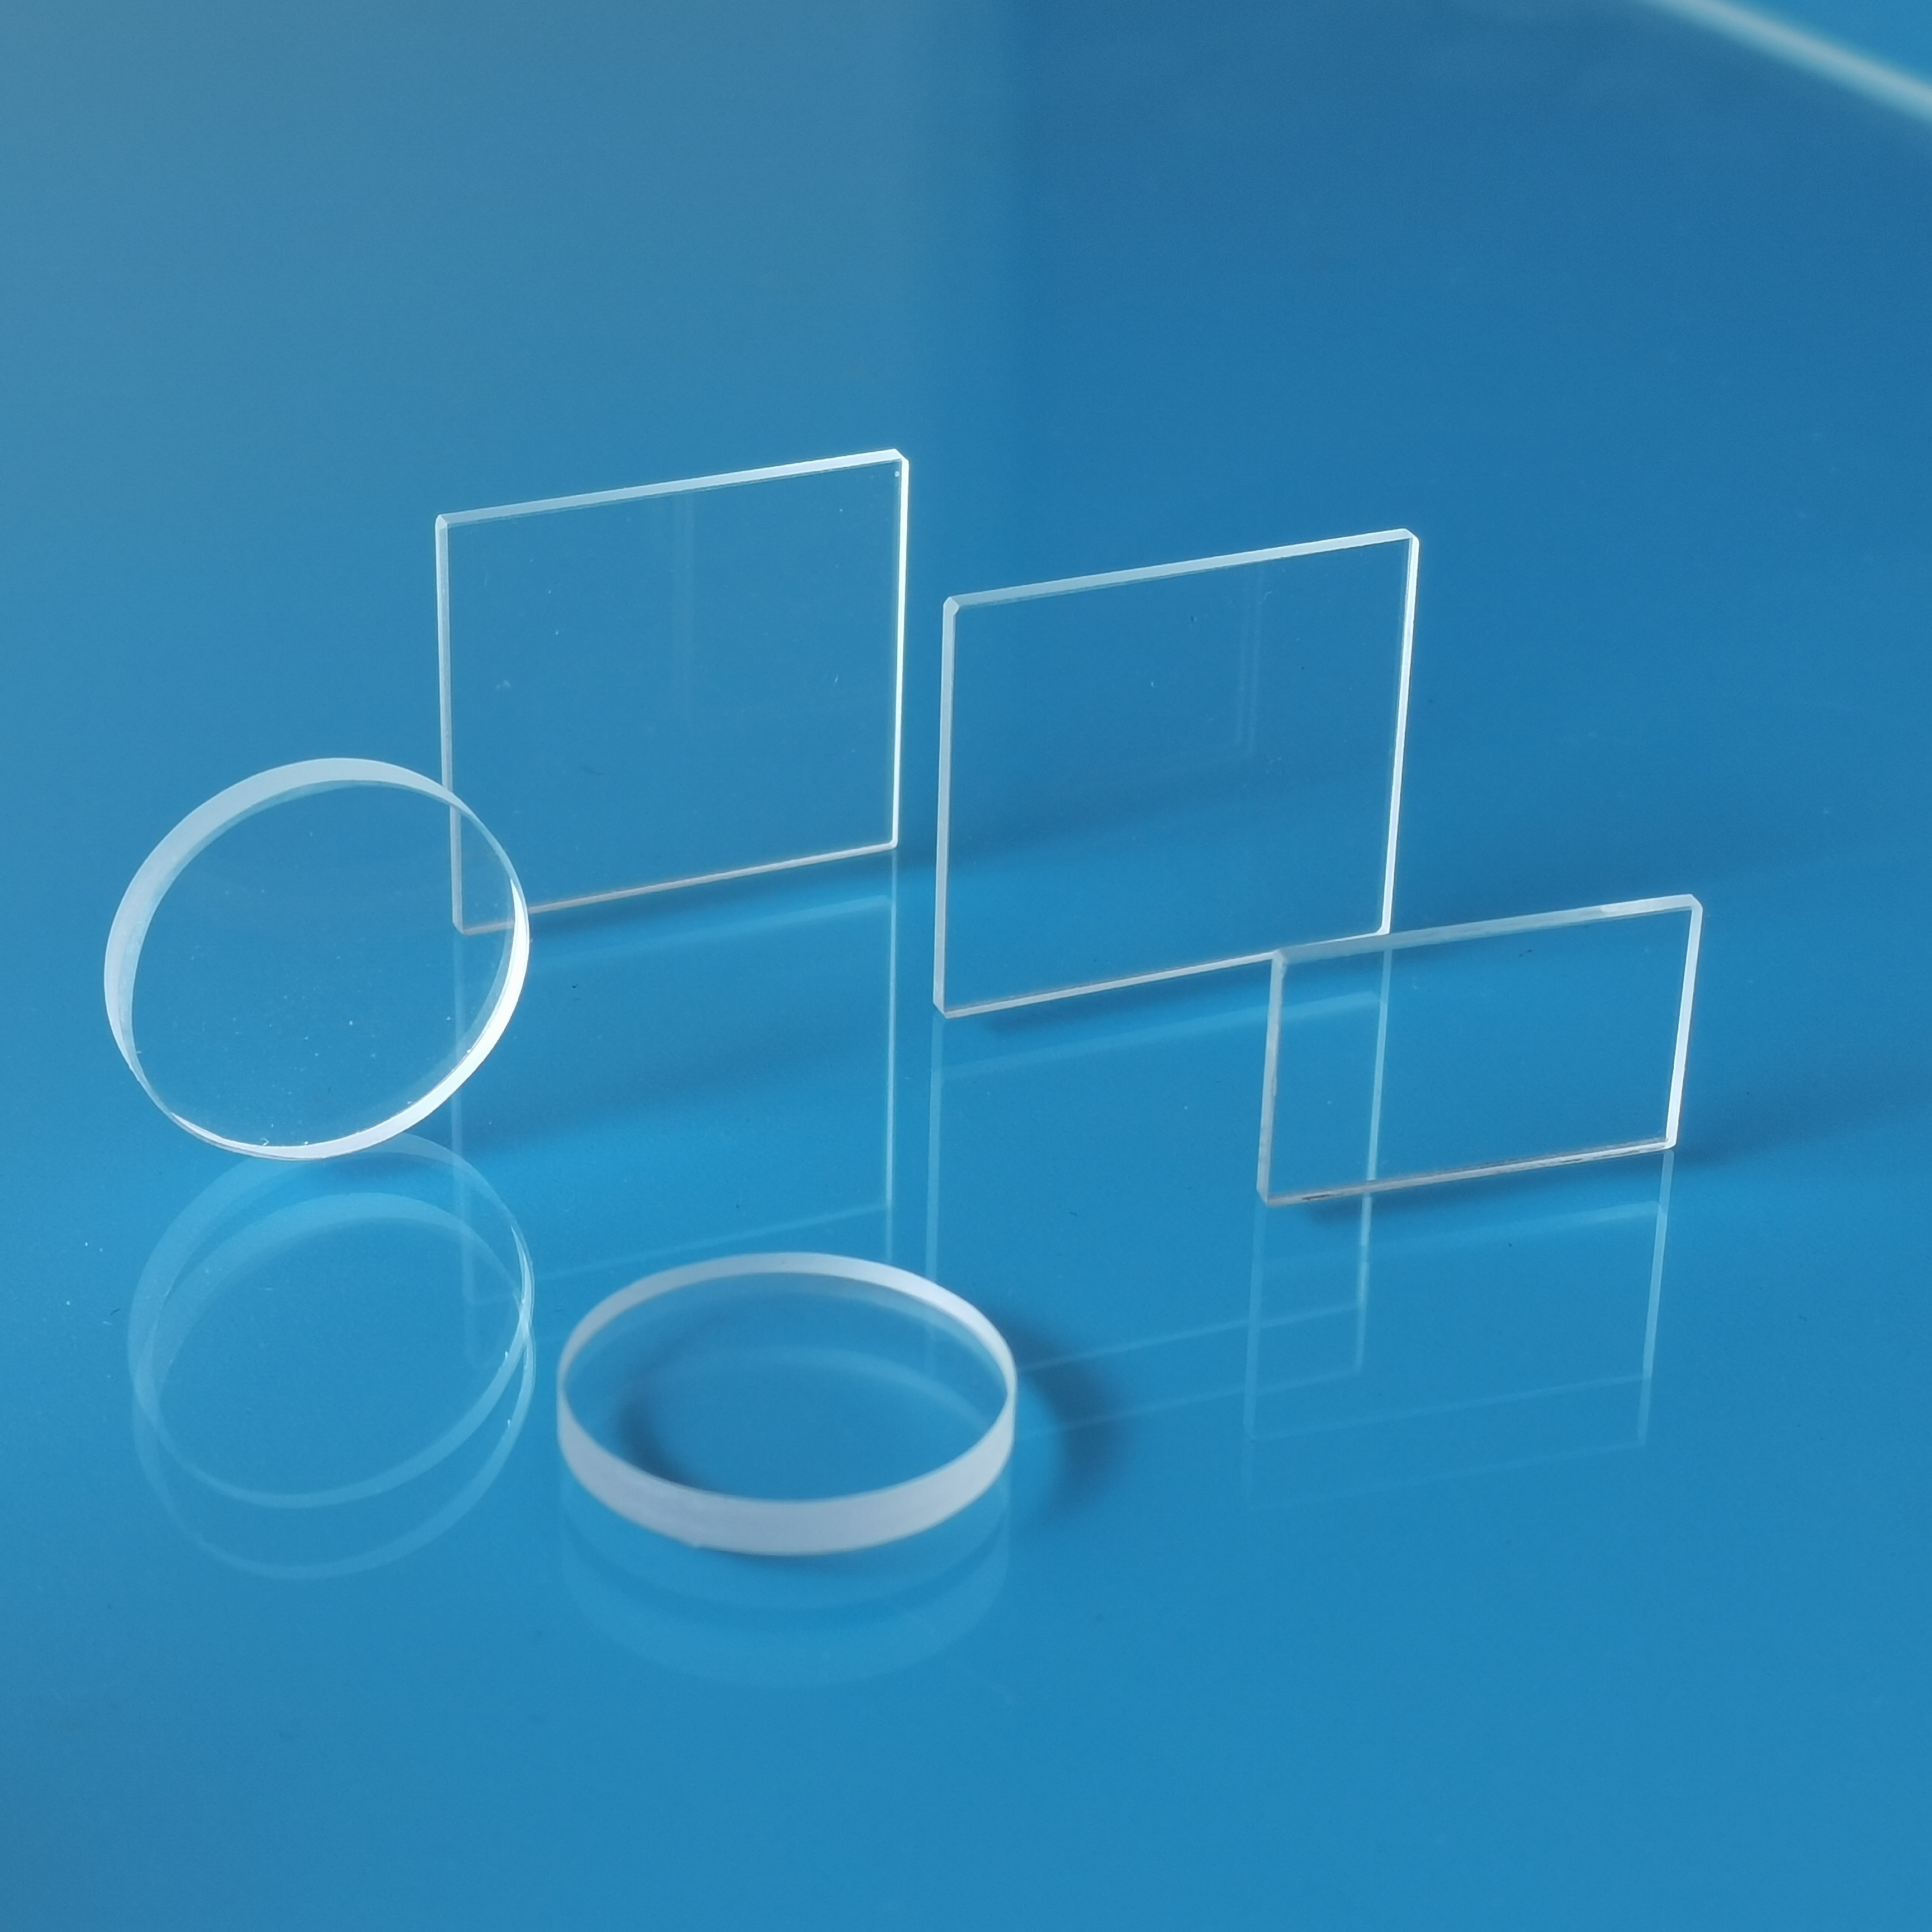 供应高透光石英玻璃JGS1高纯度耐高温石英玻璃圆片方片视窗玻璃片加工厂家